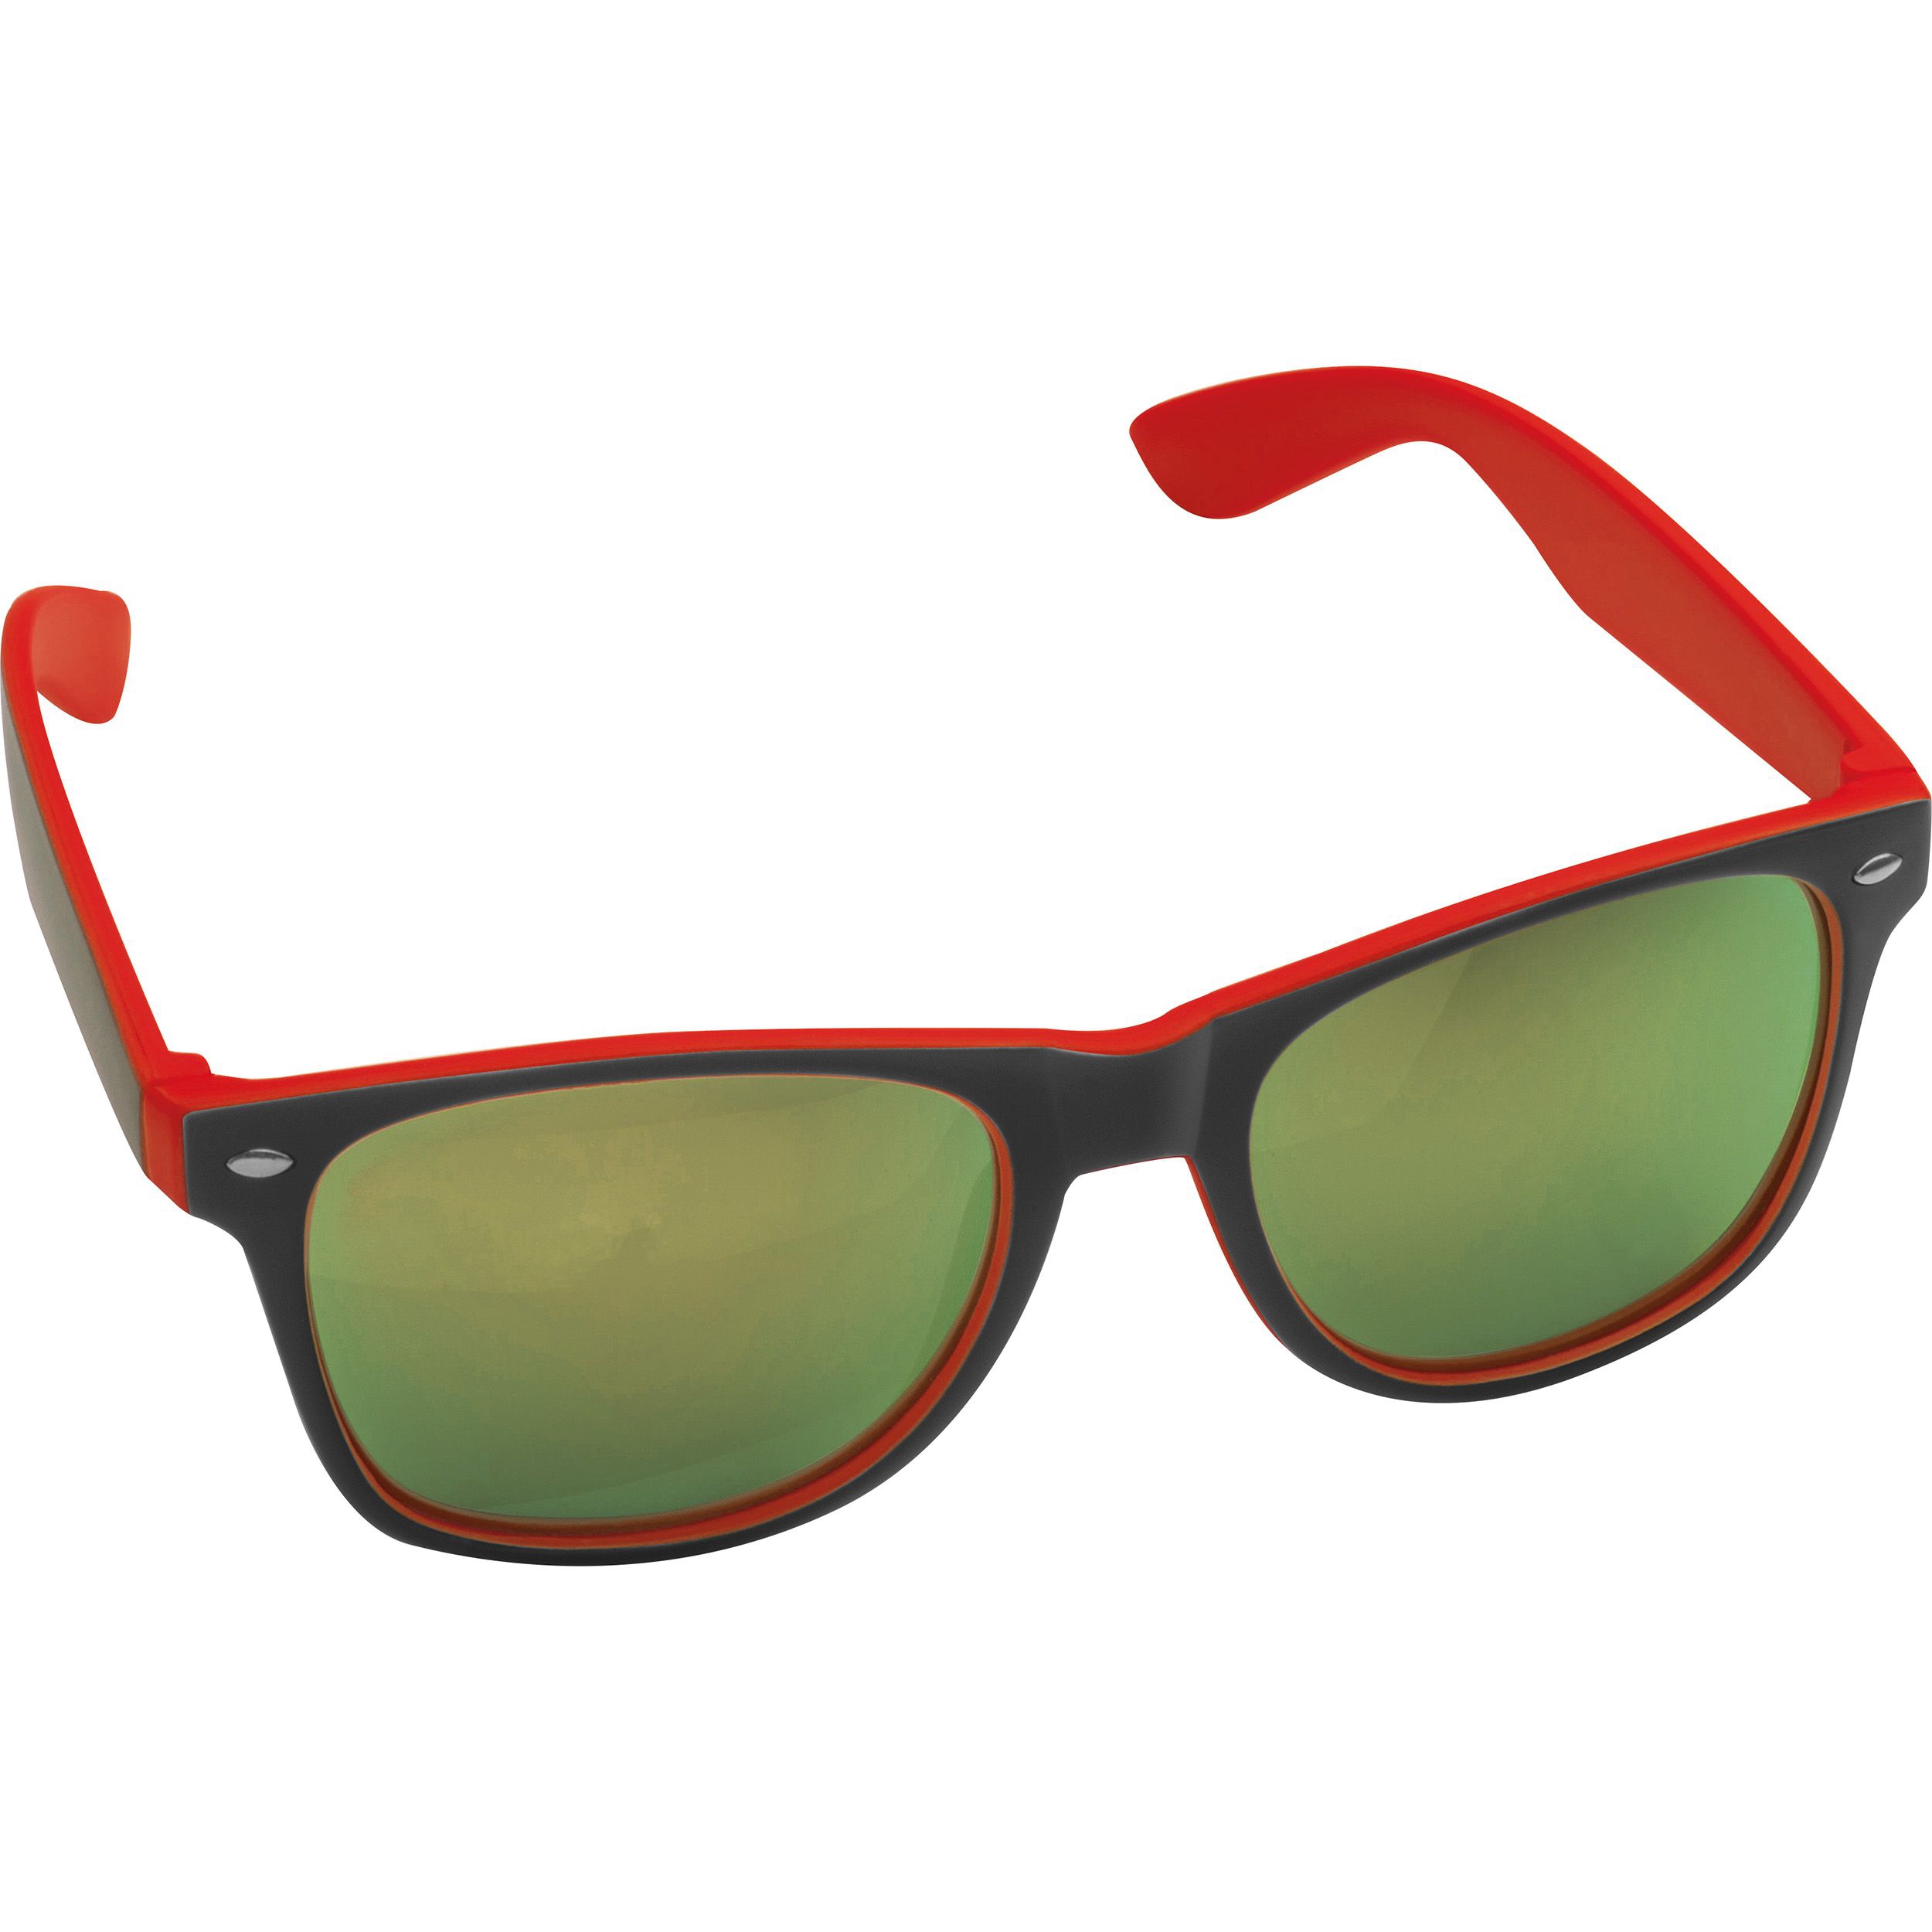 Sonnenbrille aus Kunststoff mit verspiegelten Gläsern, UV 400 Schutz, rot